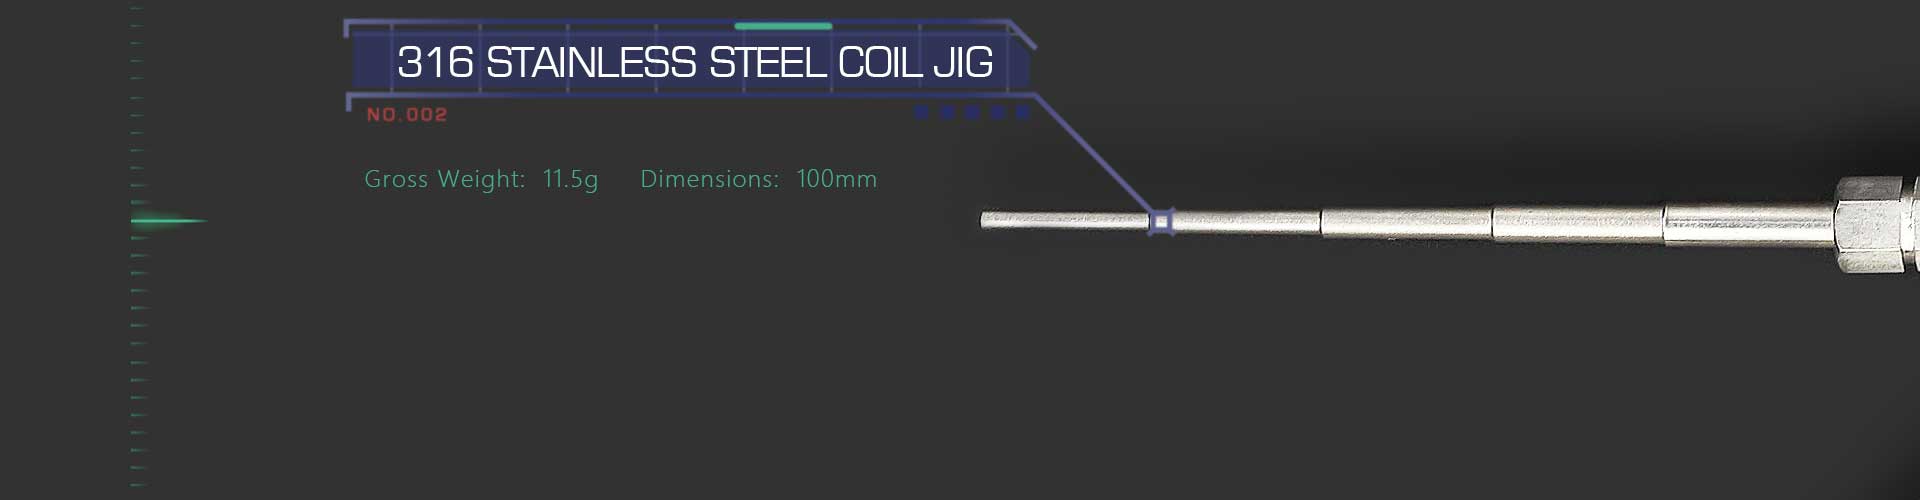 Advken Doctor Coil Tool Kit 316 Stainless Steel Coil Jig